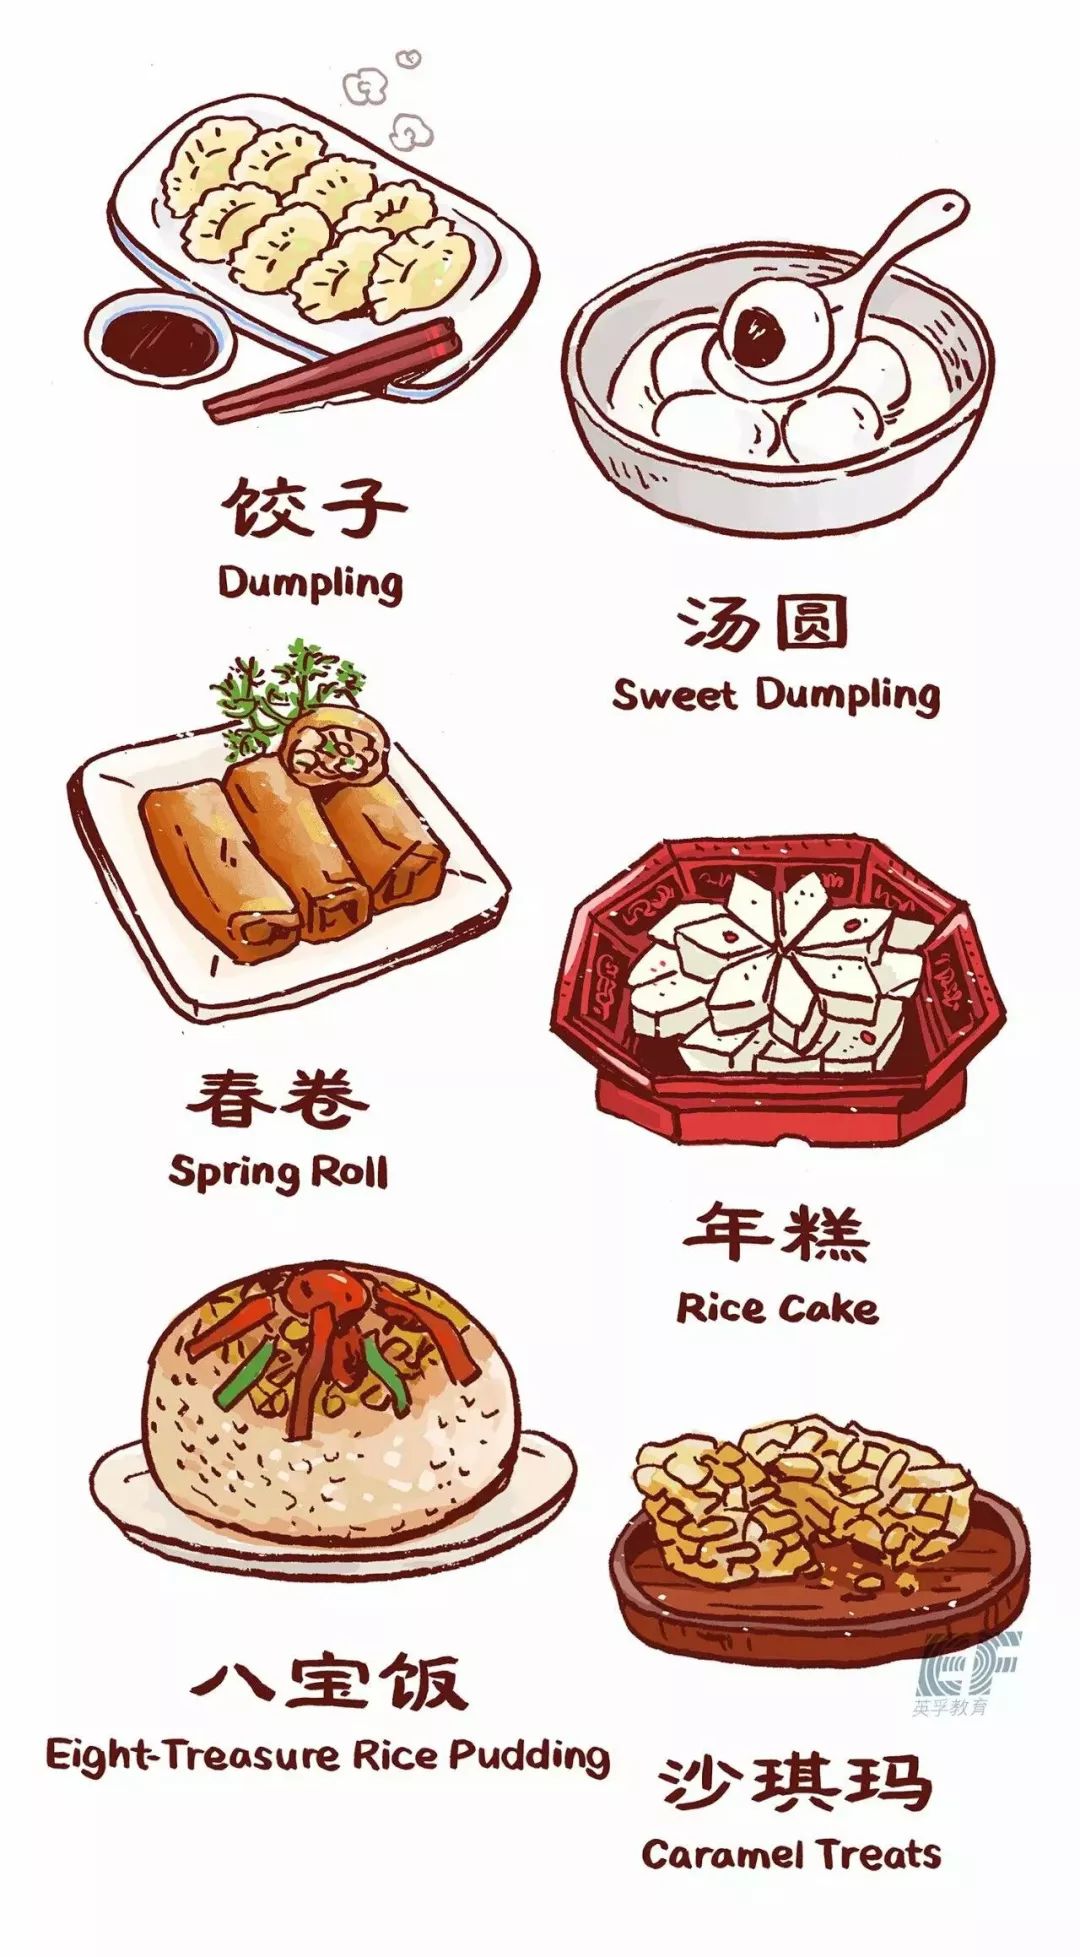 卤水拼盘,鱼香肉丝,大盘鸡……各地春节美食的英文原来这么说!